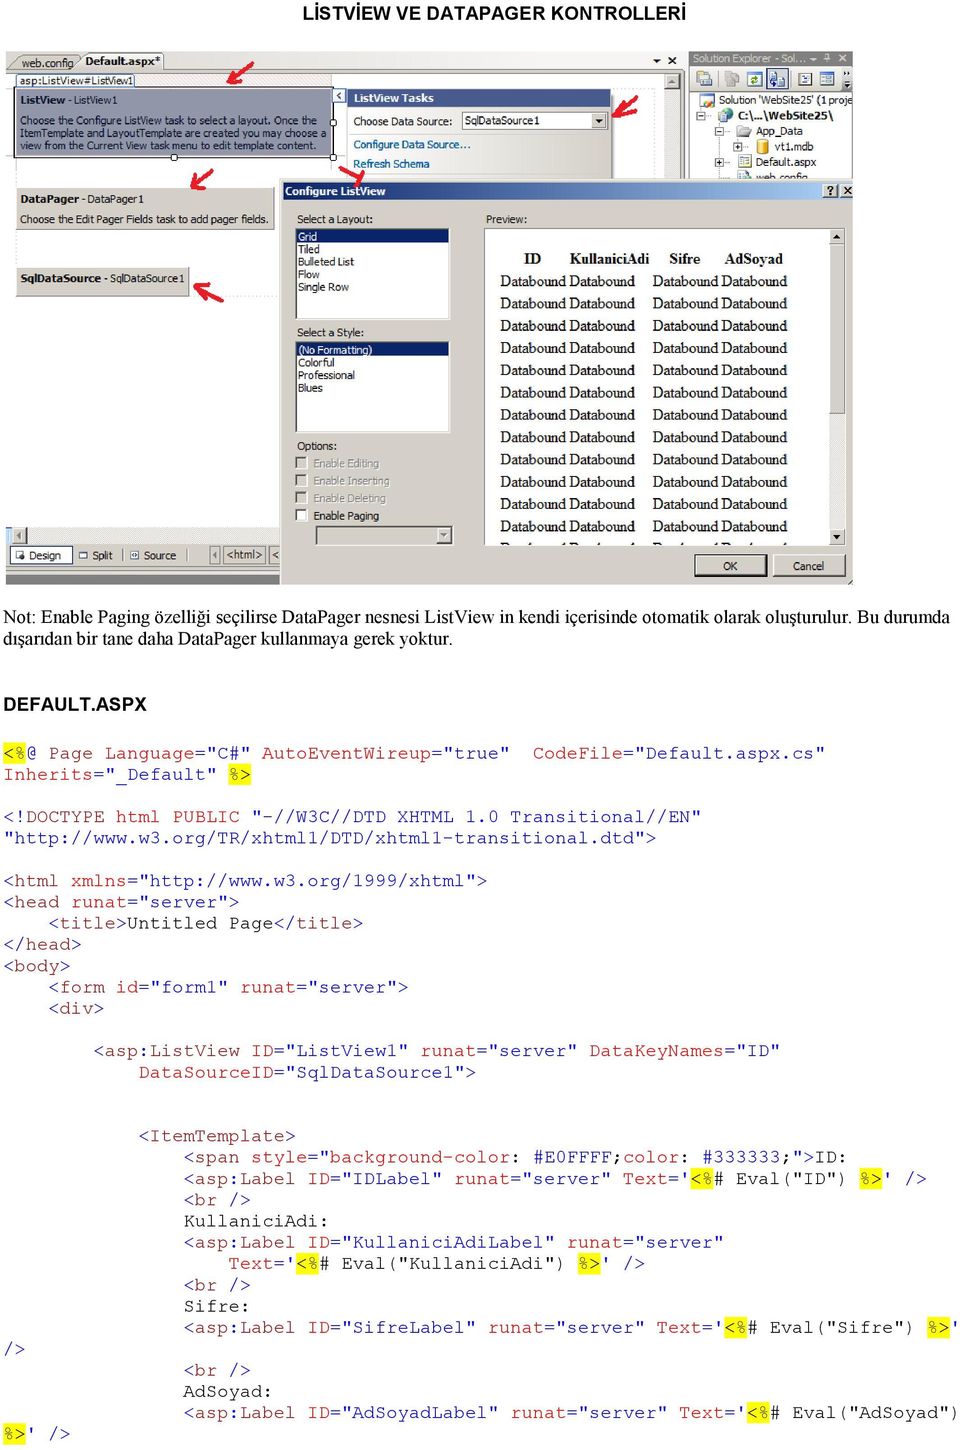 DOCTYPE html PUBLIC "-//W3C//DTD XHTML 1.0 Transitional//EN" "http://www.w3.